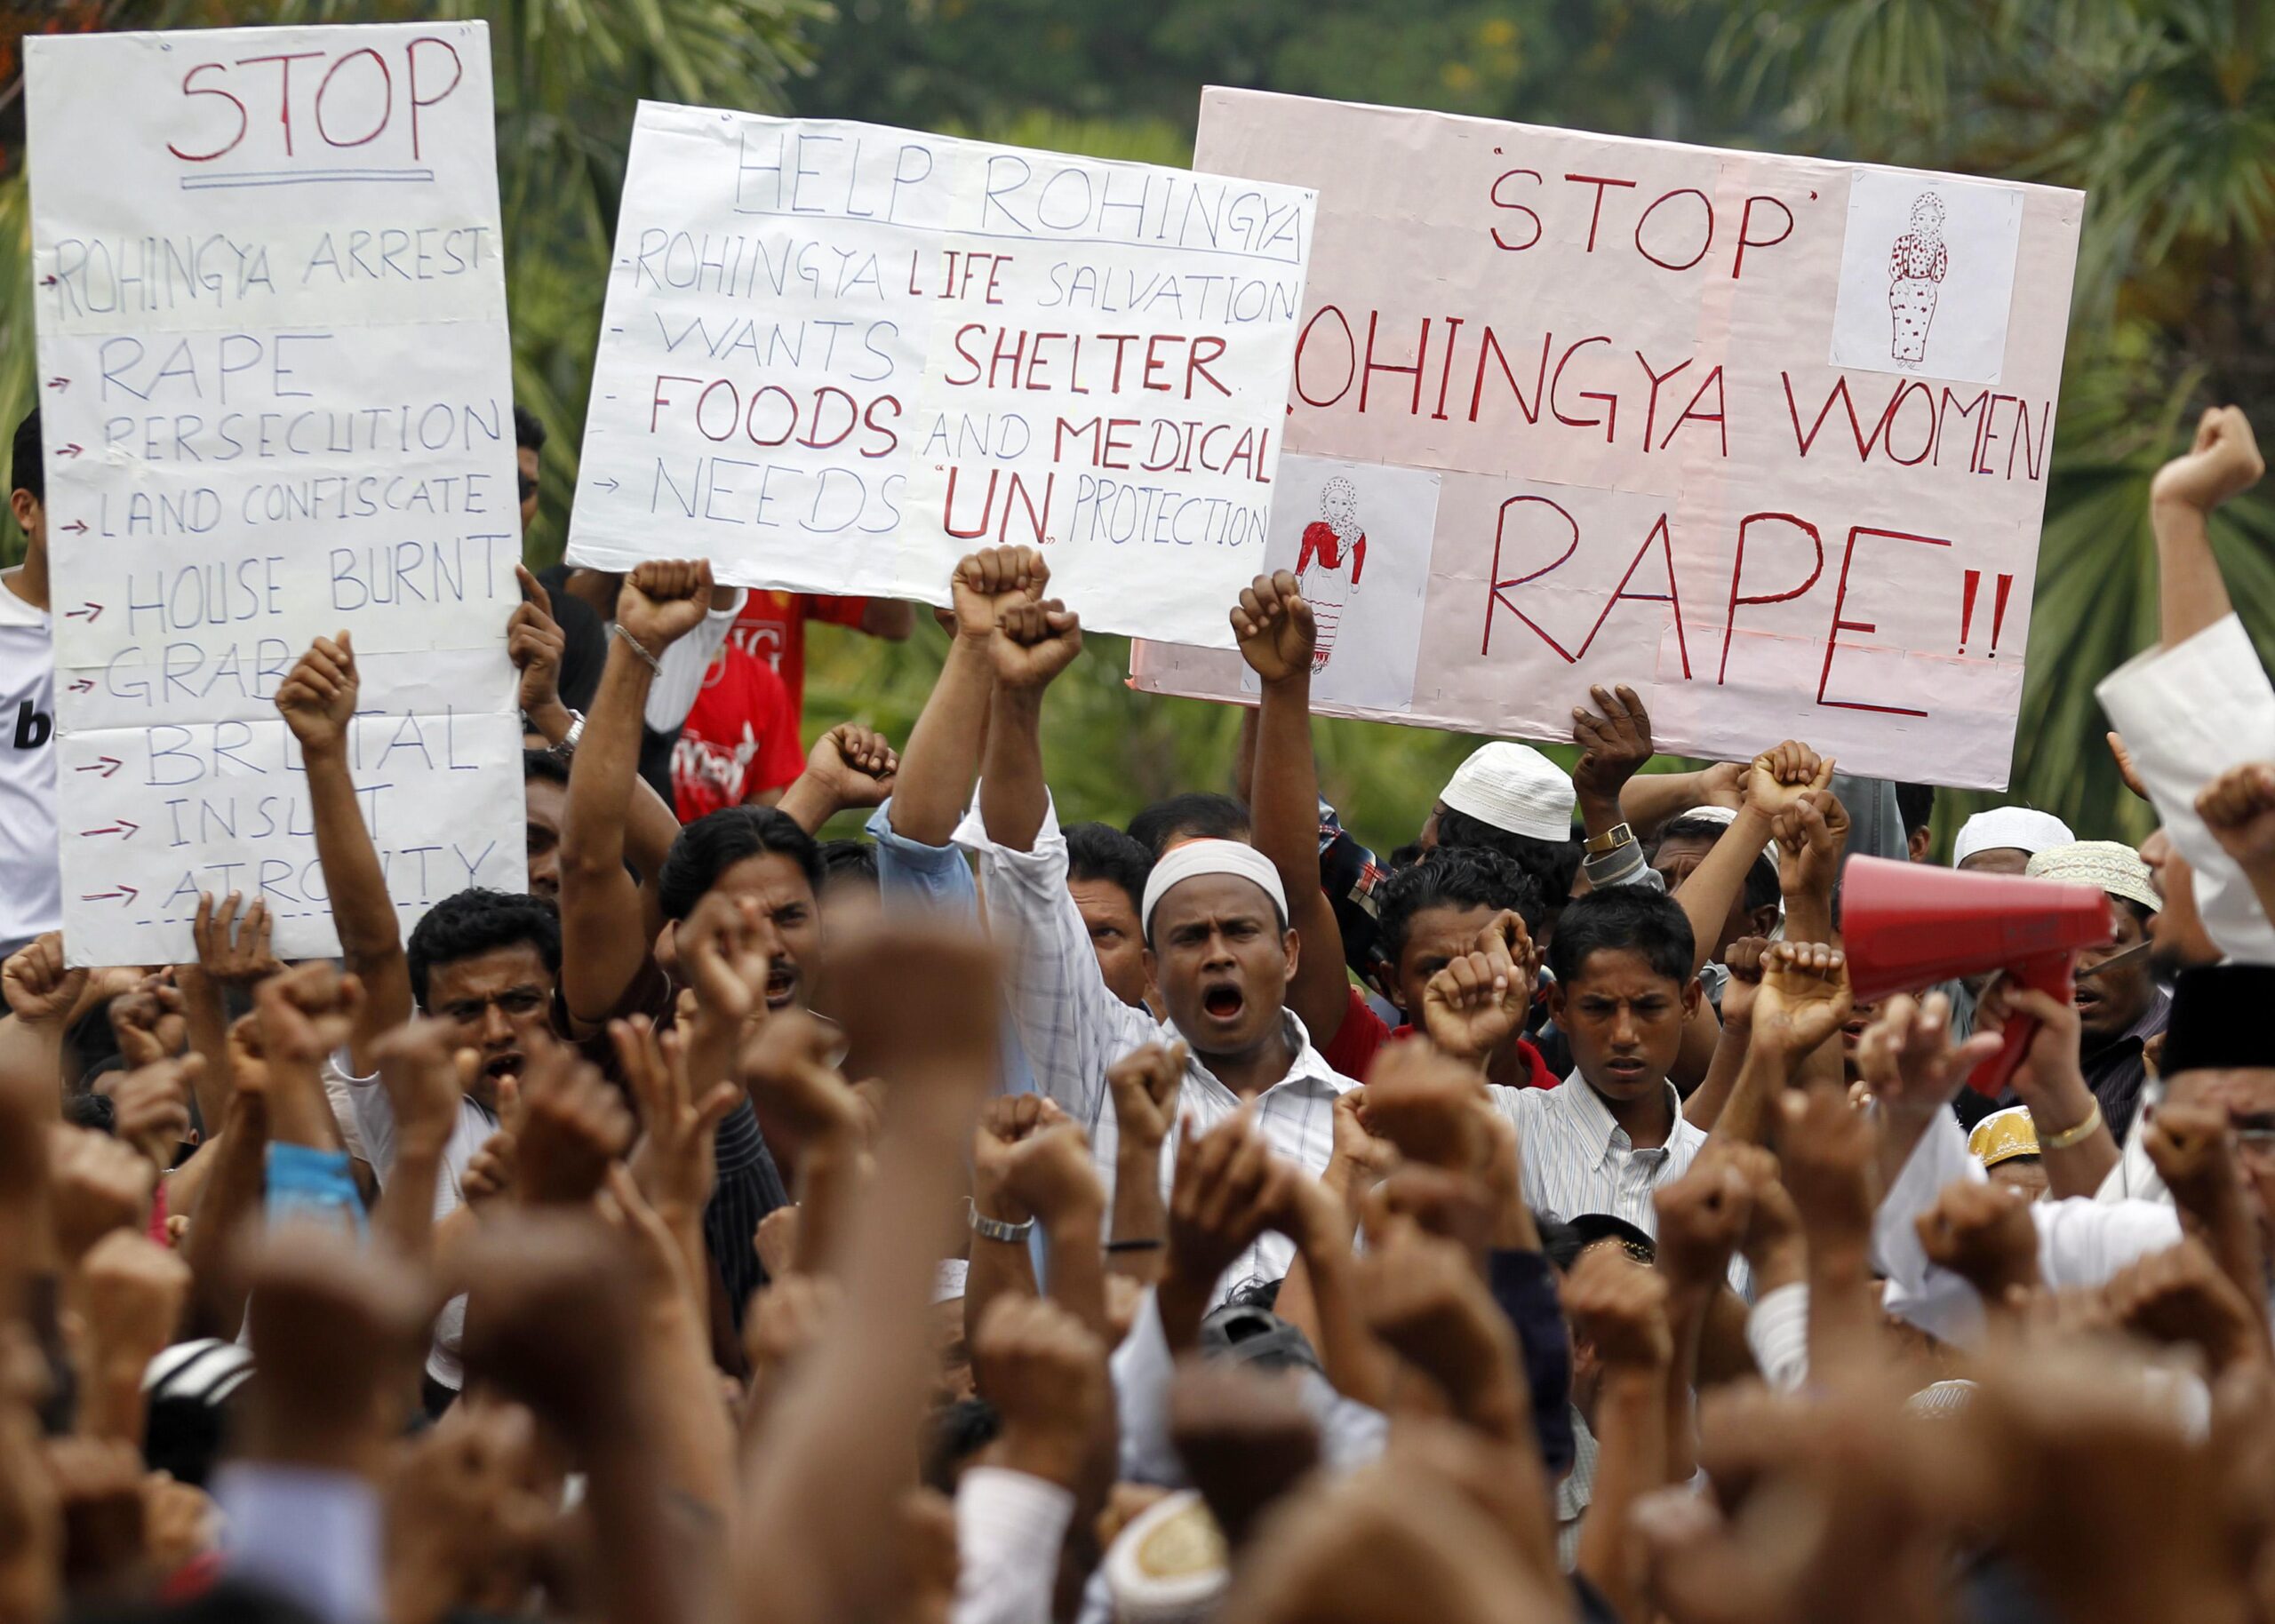 Congress must pass the Rohingya GAP Act